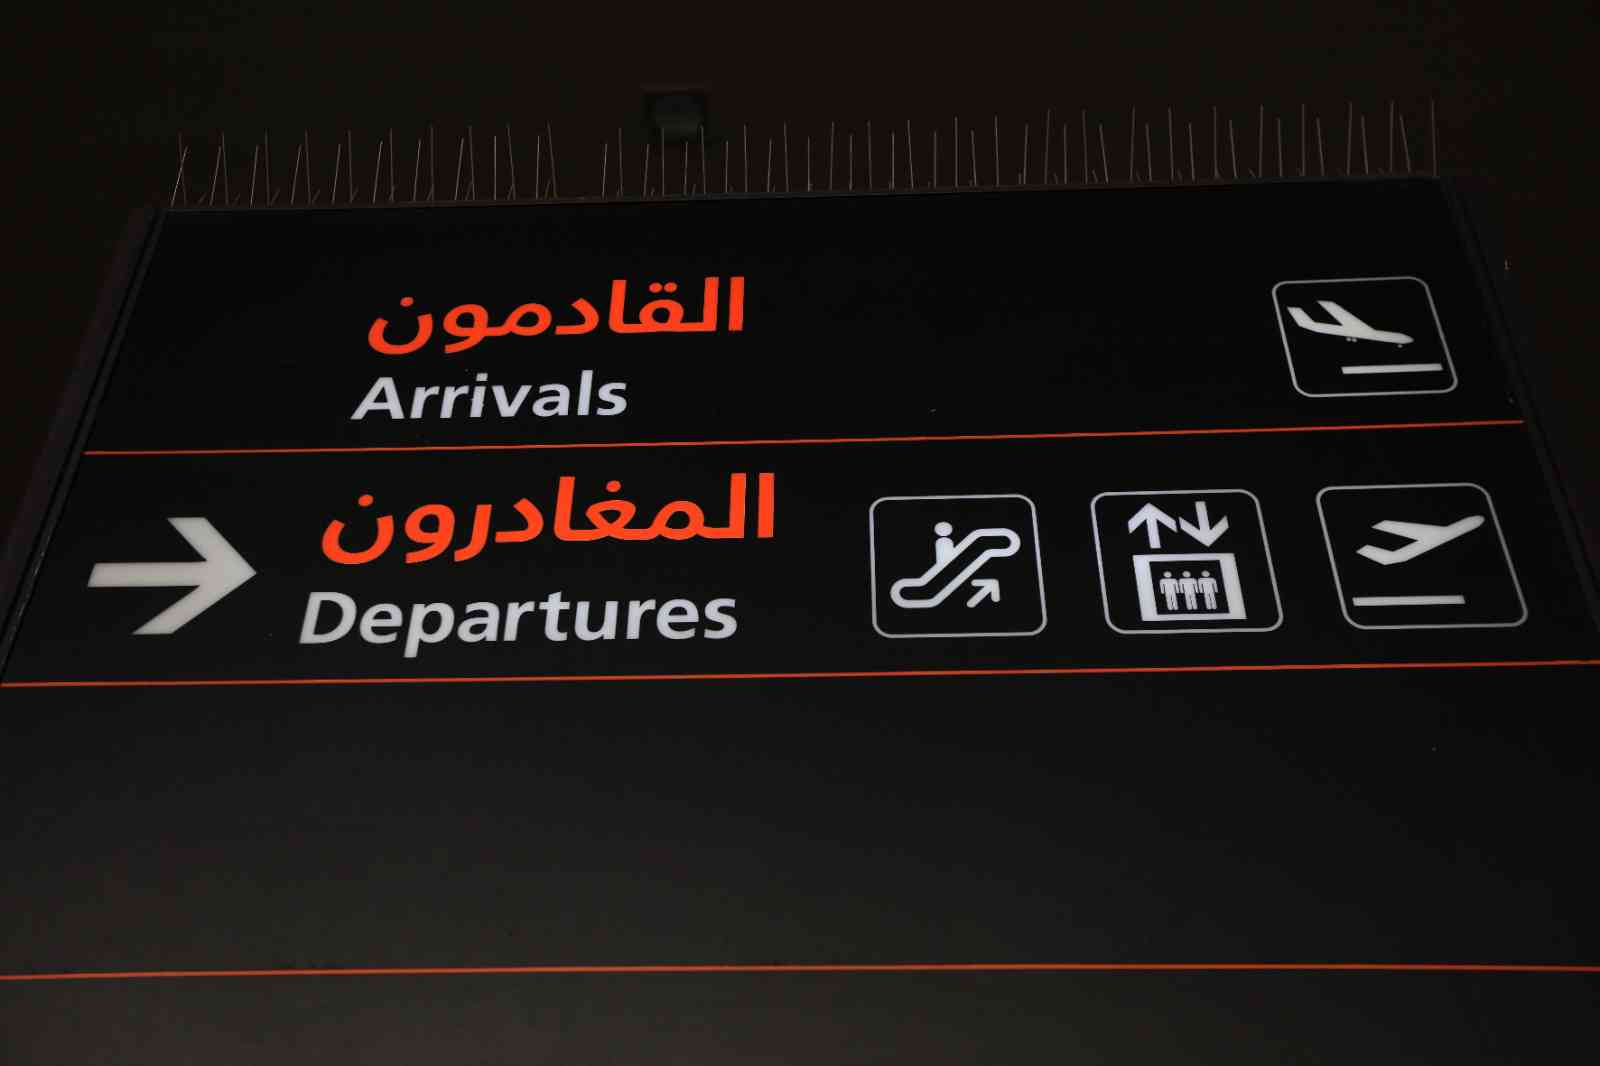 هيئة الطيران: مدة إغلاق الأجواء الأردنية 6 ساعات قابلة للزيادة أو النقصان